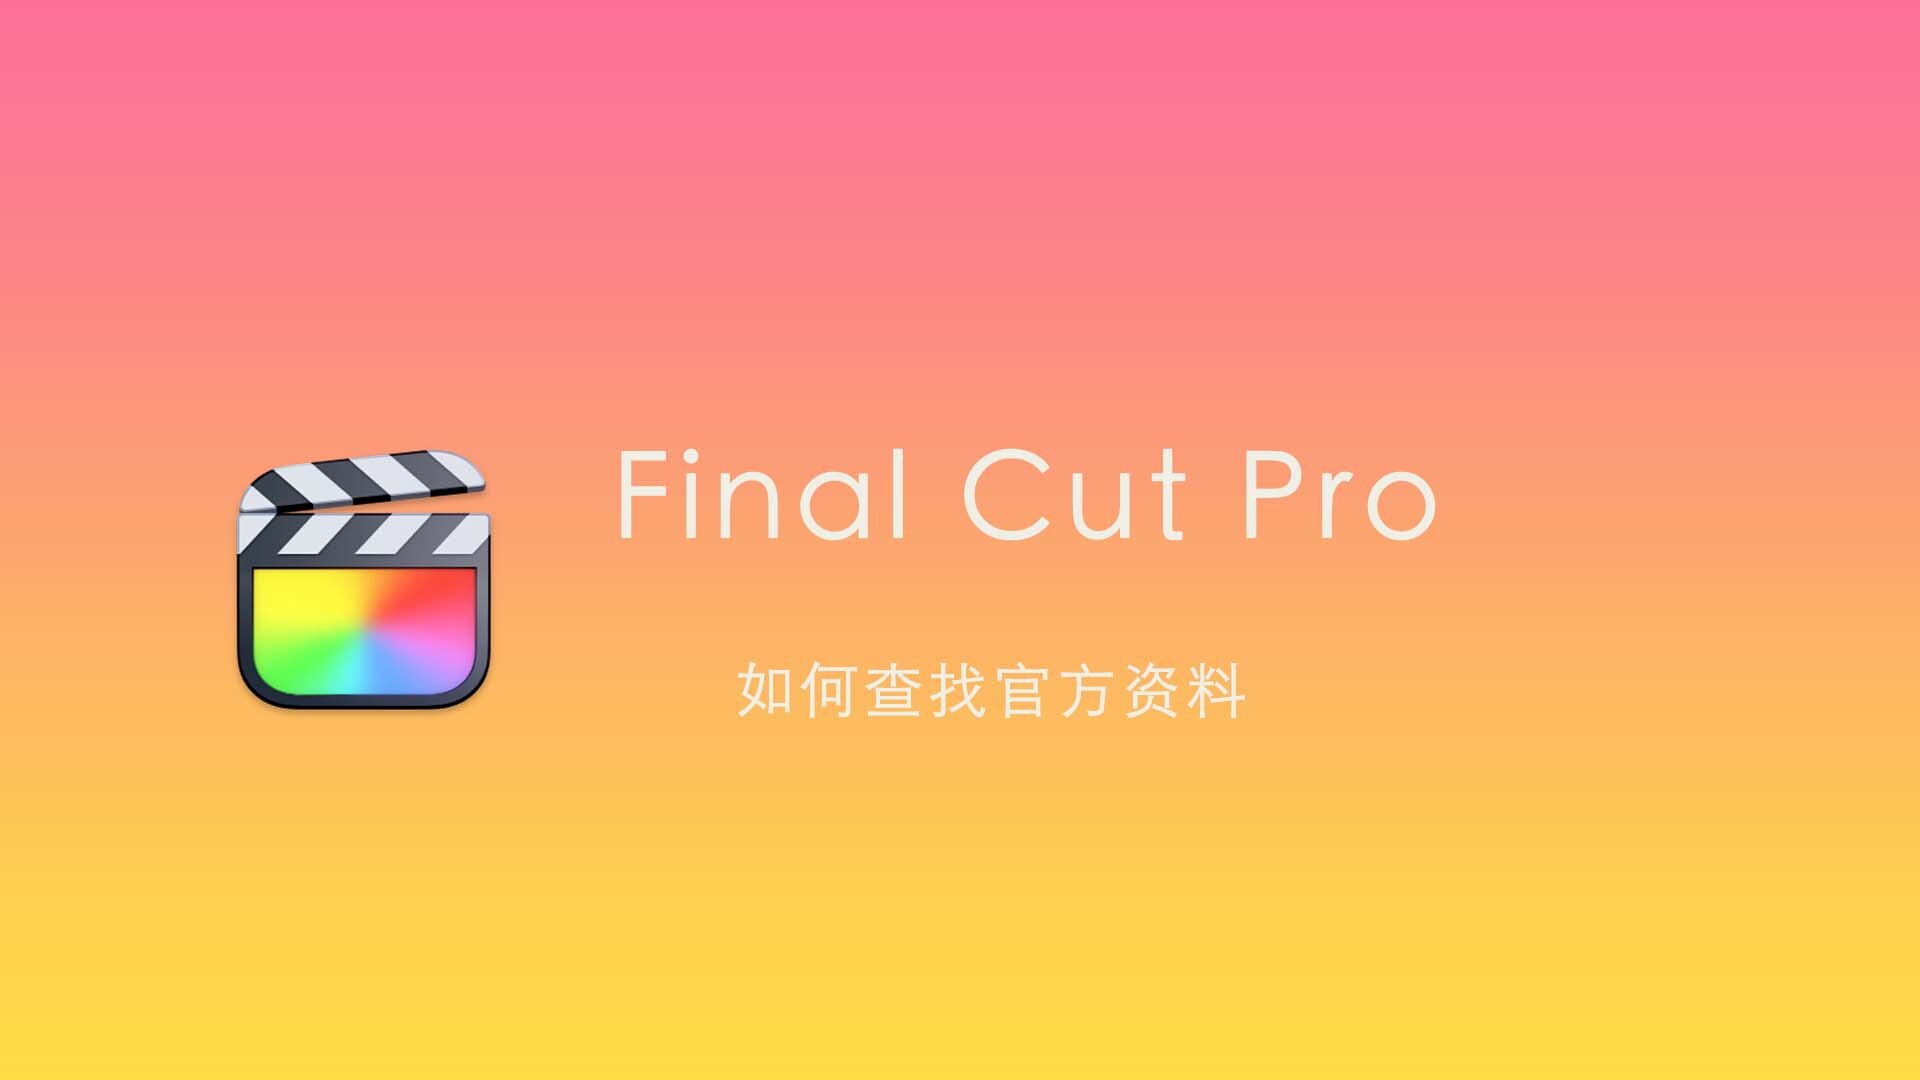 Final Cut Pro 中文基础教程(41)如何查找官方资料